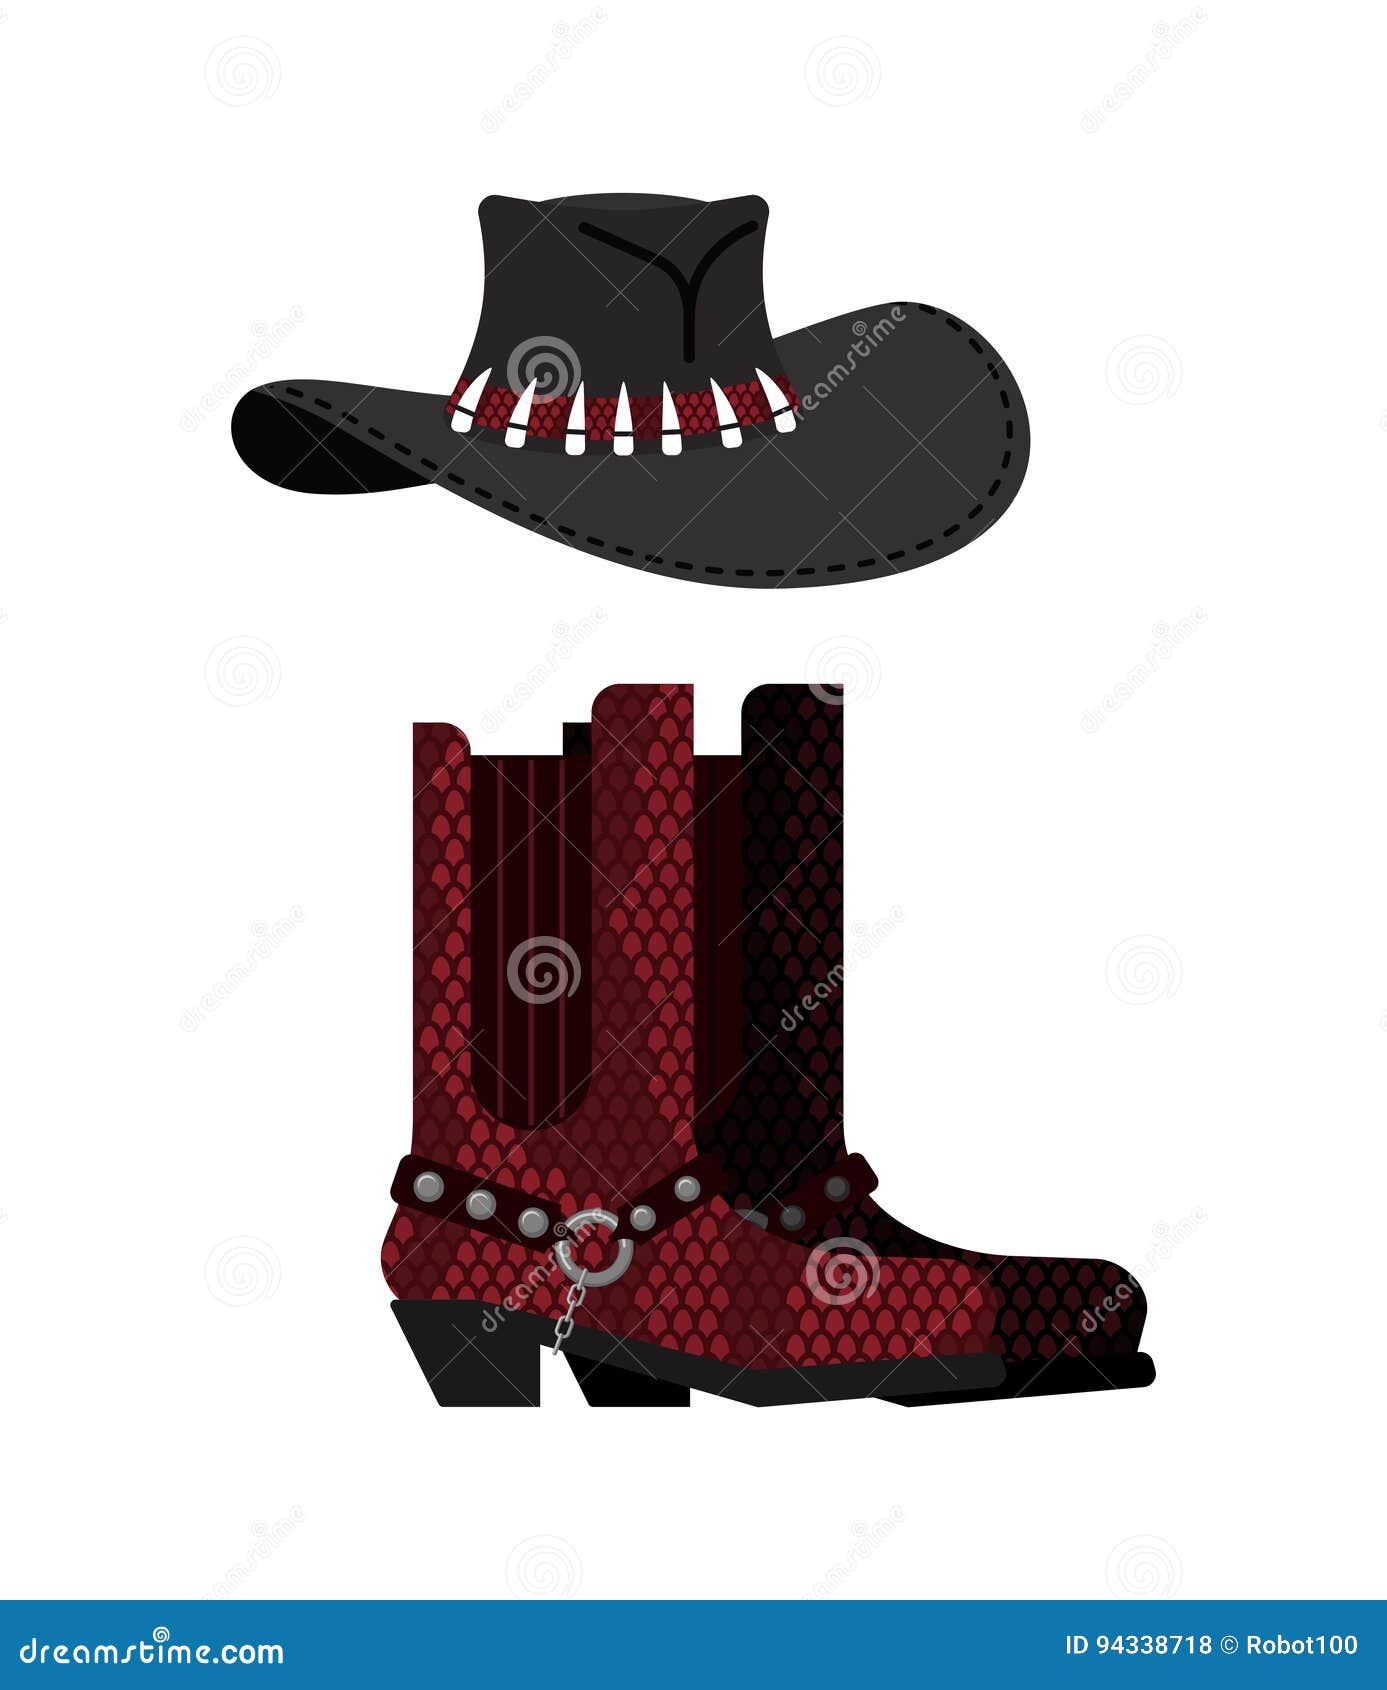 australian hat crocodile skin boots cowboy cap python l leather shoes western clothes rodeo shoe 94338718